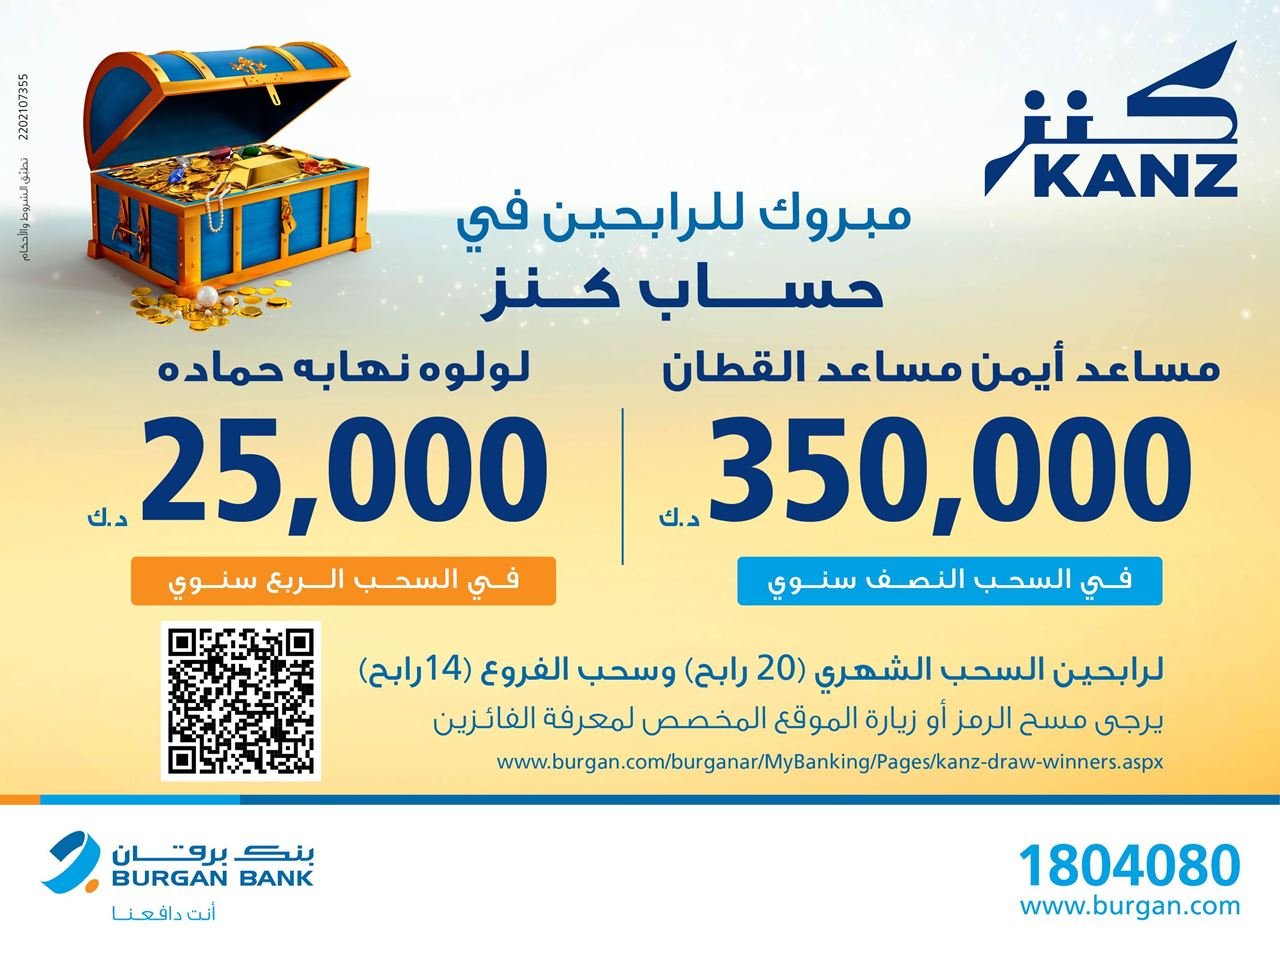 بنك برقان يعلن اسم الفائز بجائزة 350,000 د.ك للسحب النصف سنوي لحساب كنز